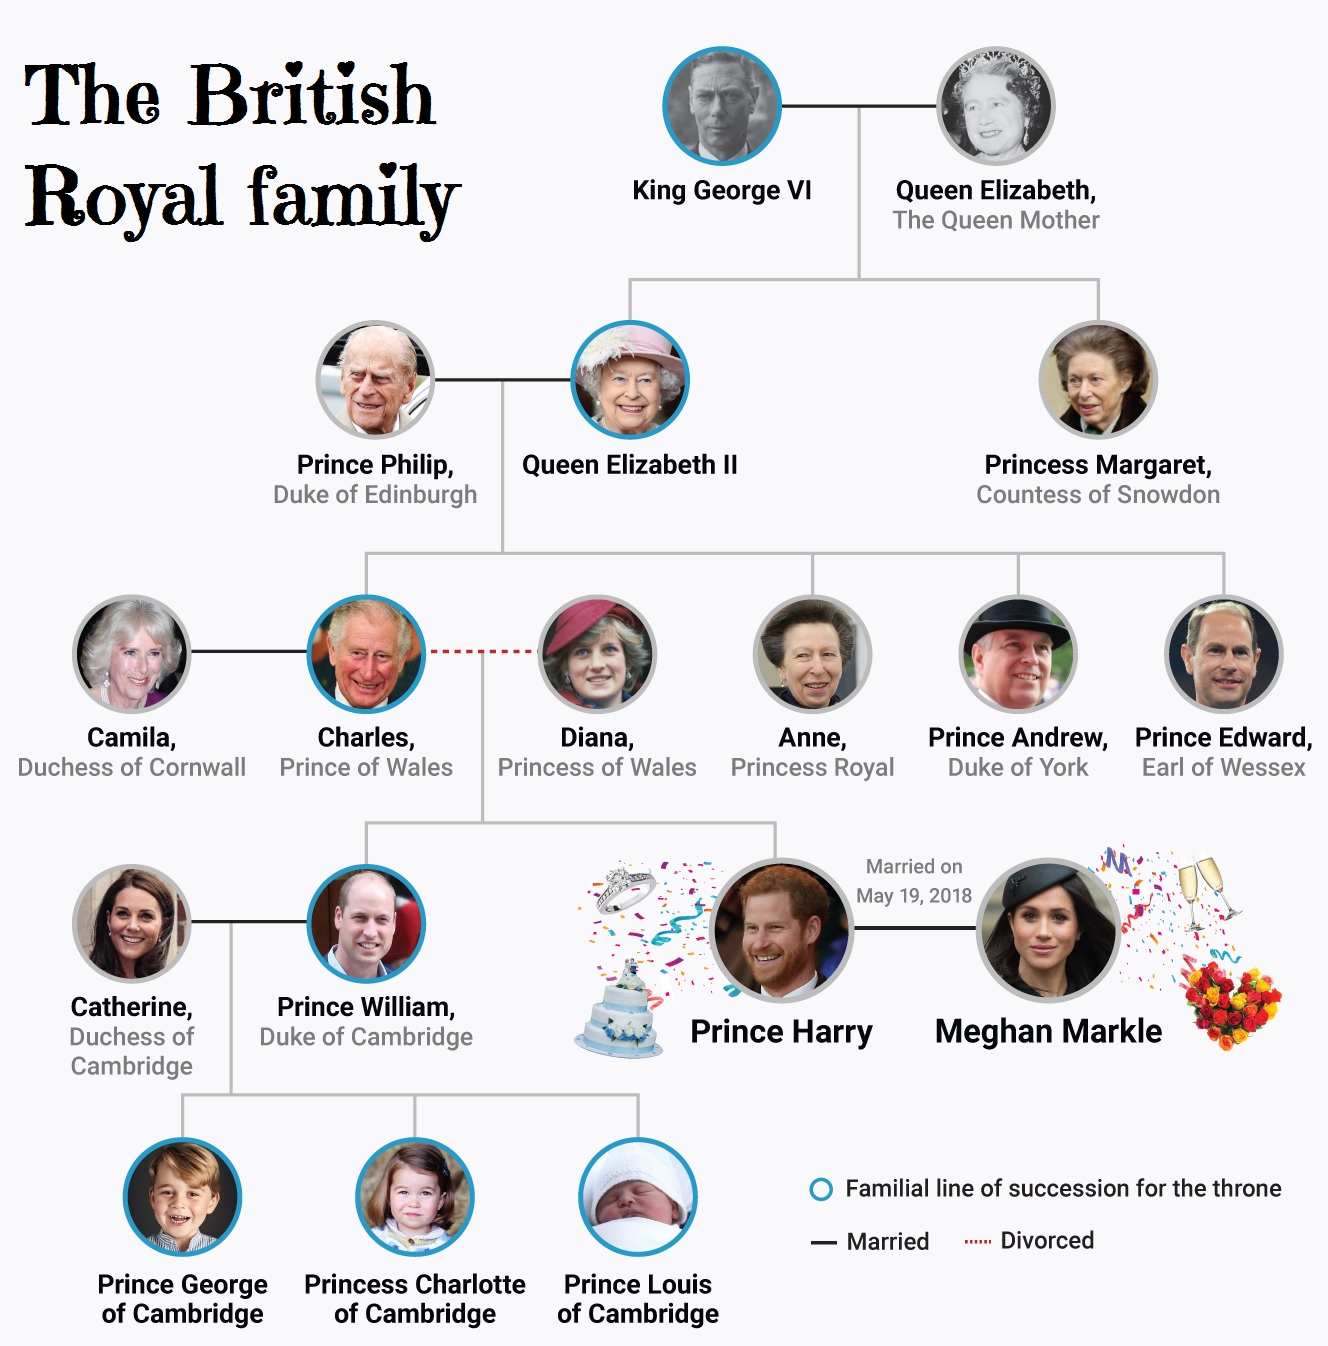 La Famille Royale Dangleterre Arbre Genealogique 2021 La Famille Royale D'angleterre Arbre Généalogique 2021 | AUTOMASITES